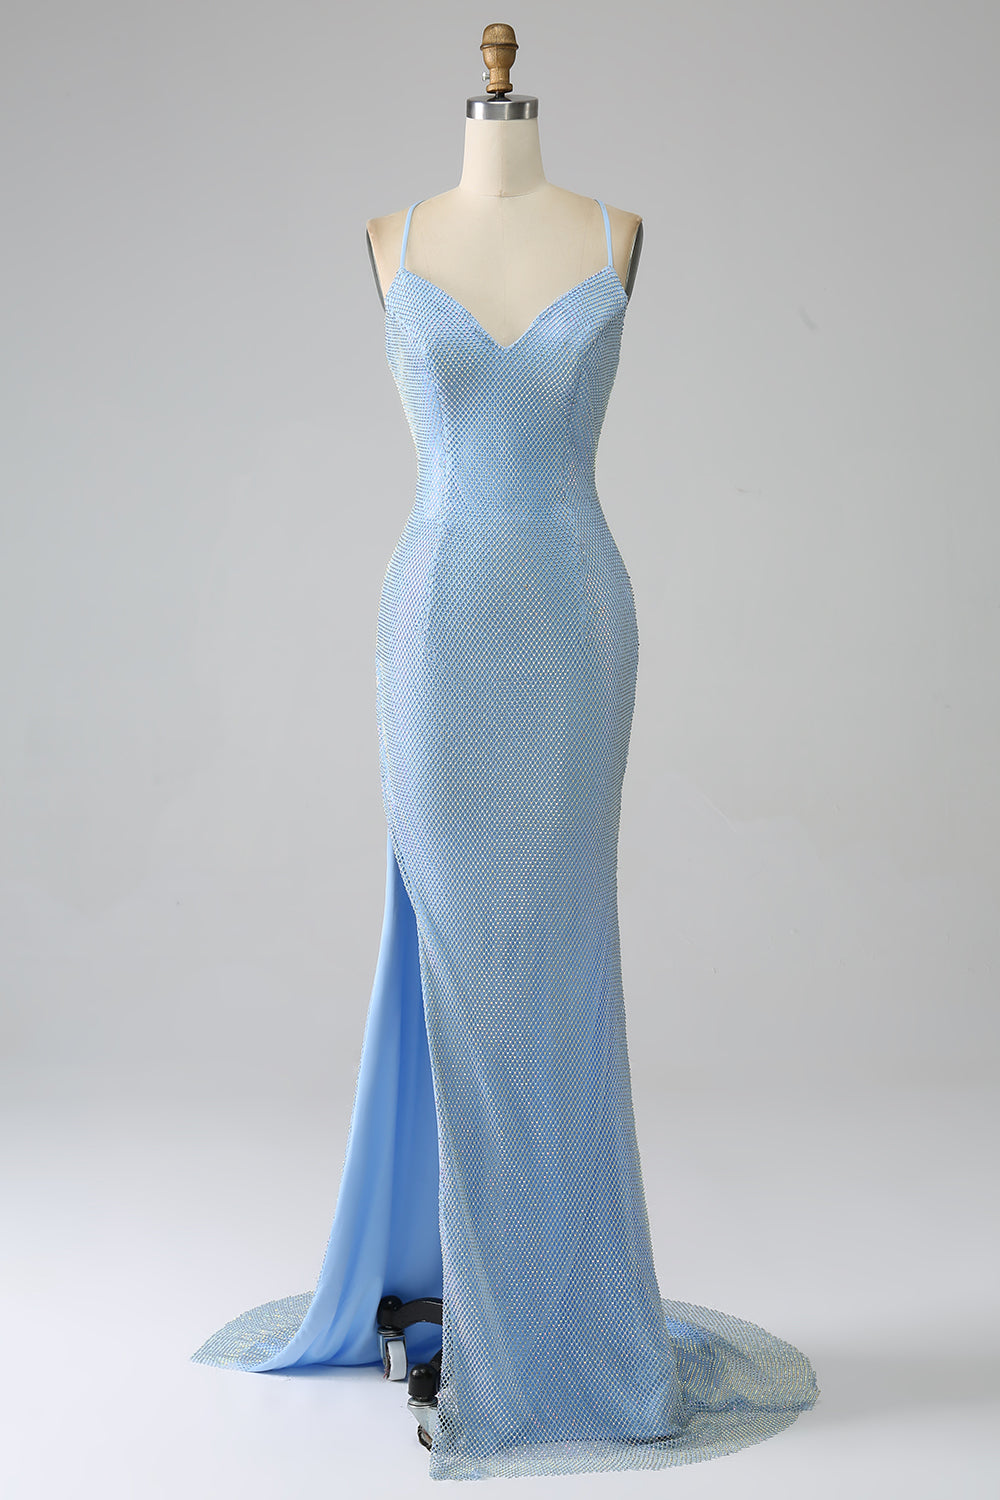 Havfrue blå lang ballkjole med spalt